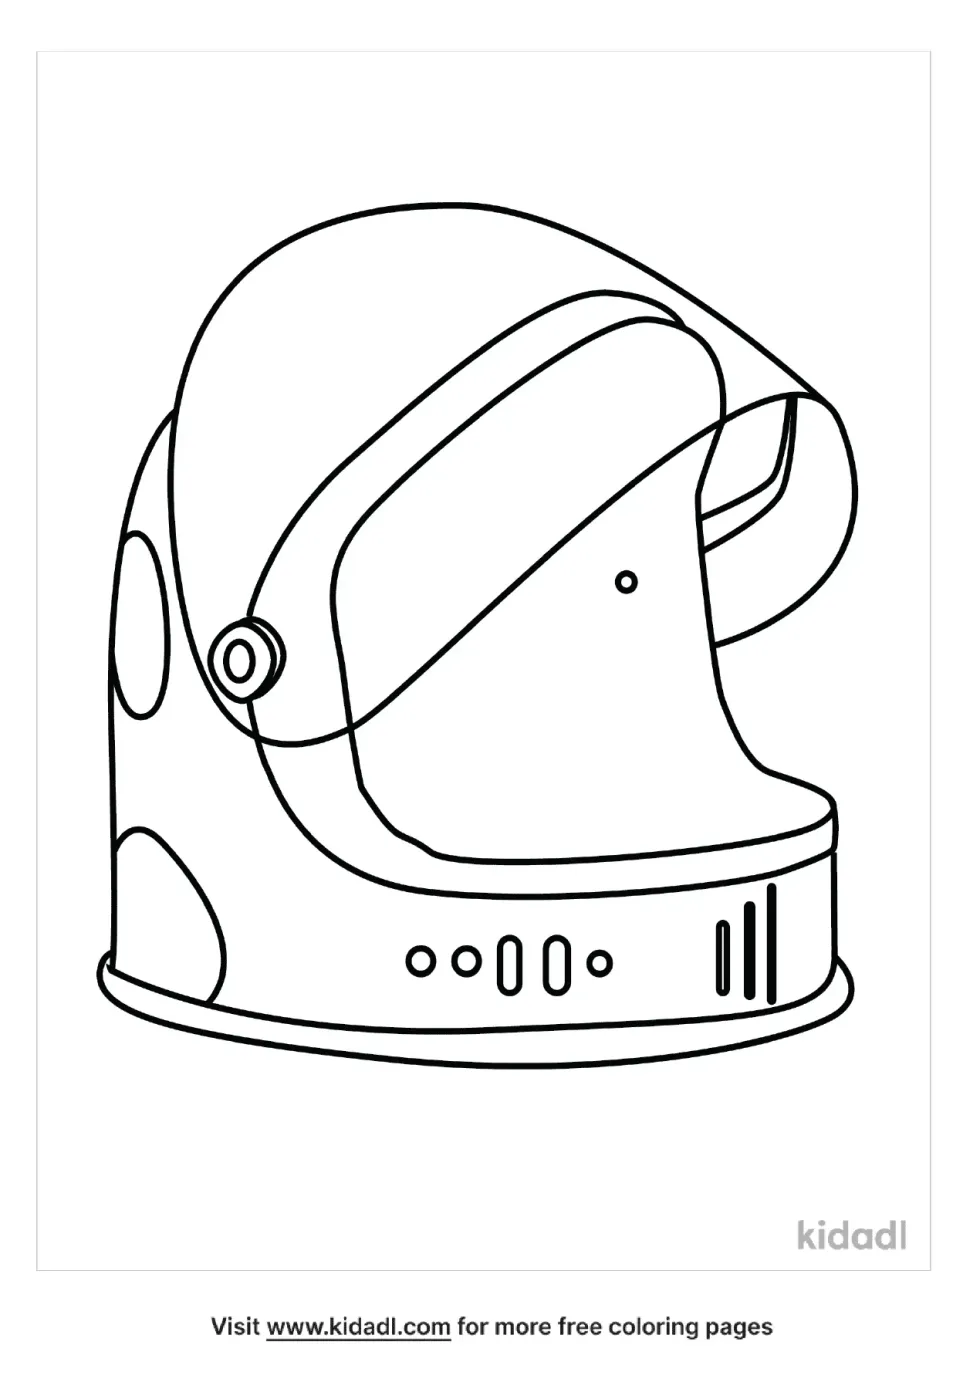 Space Helmet